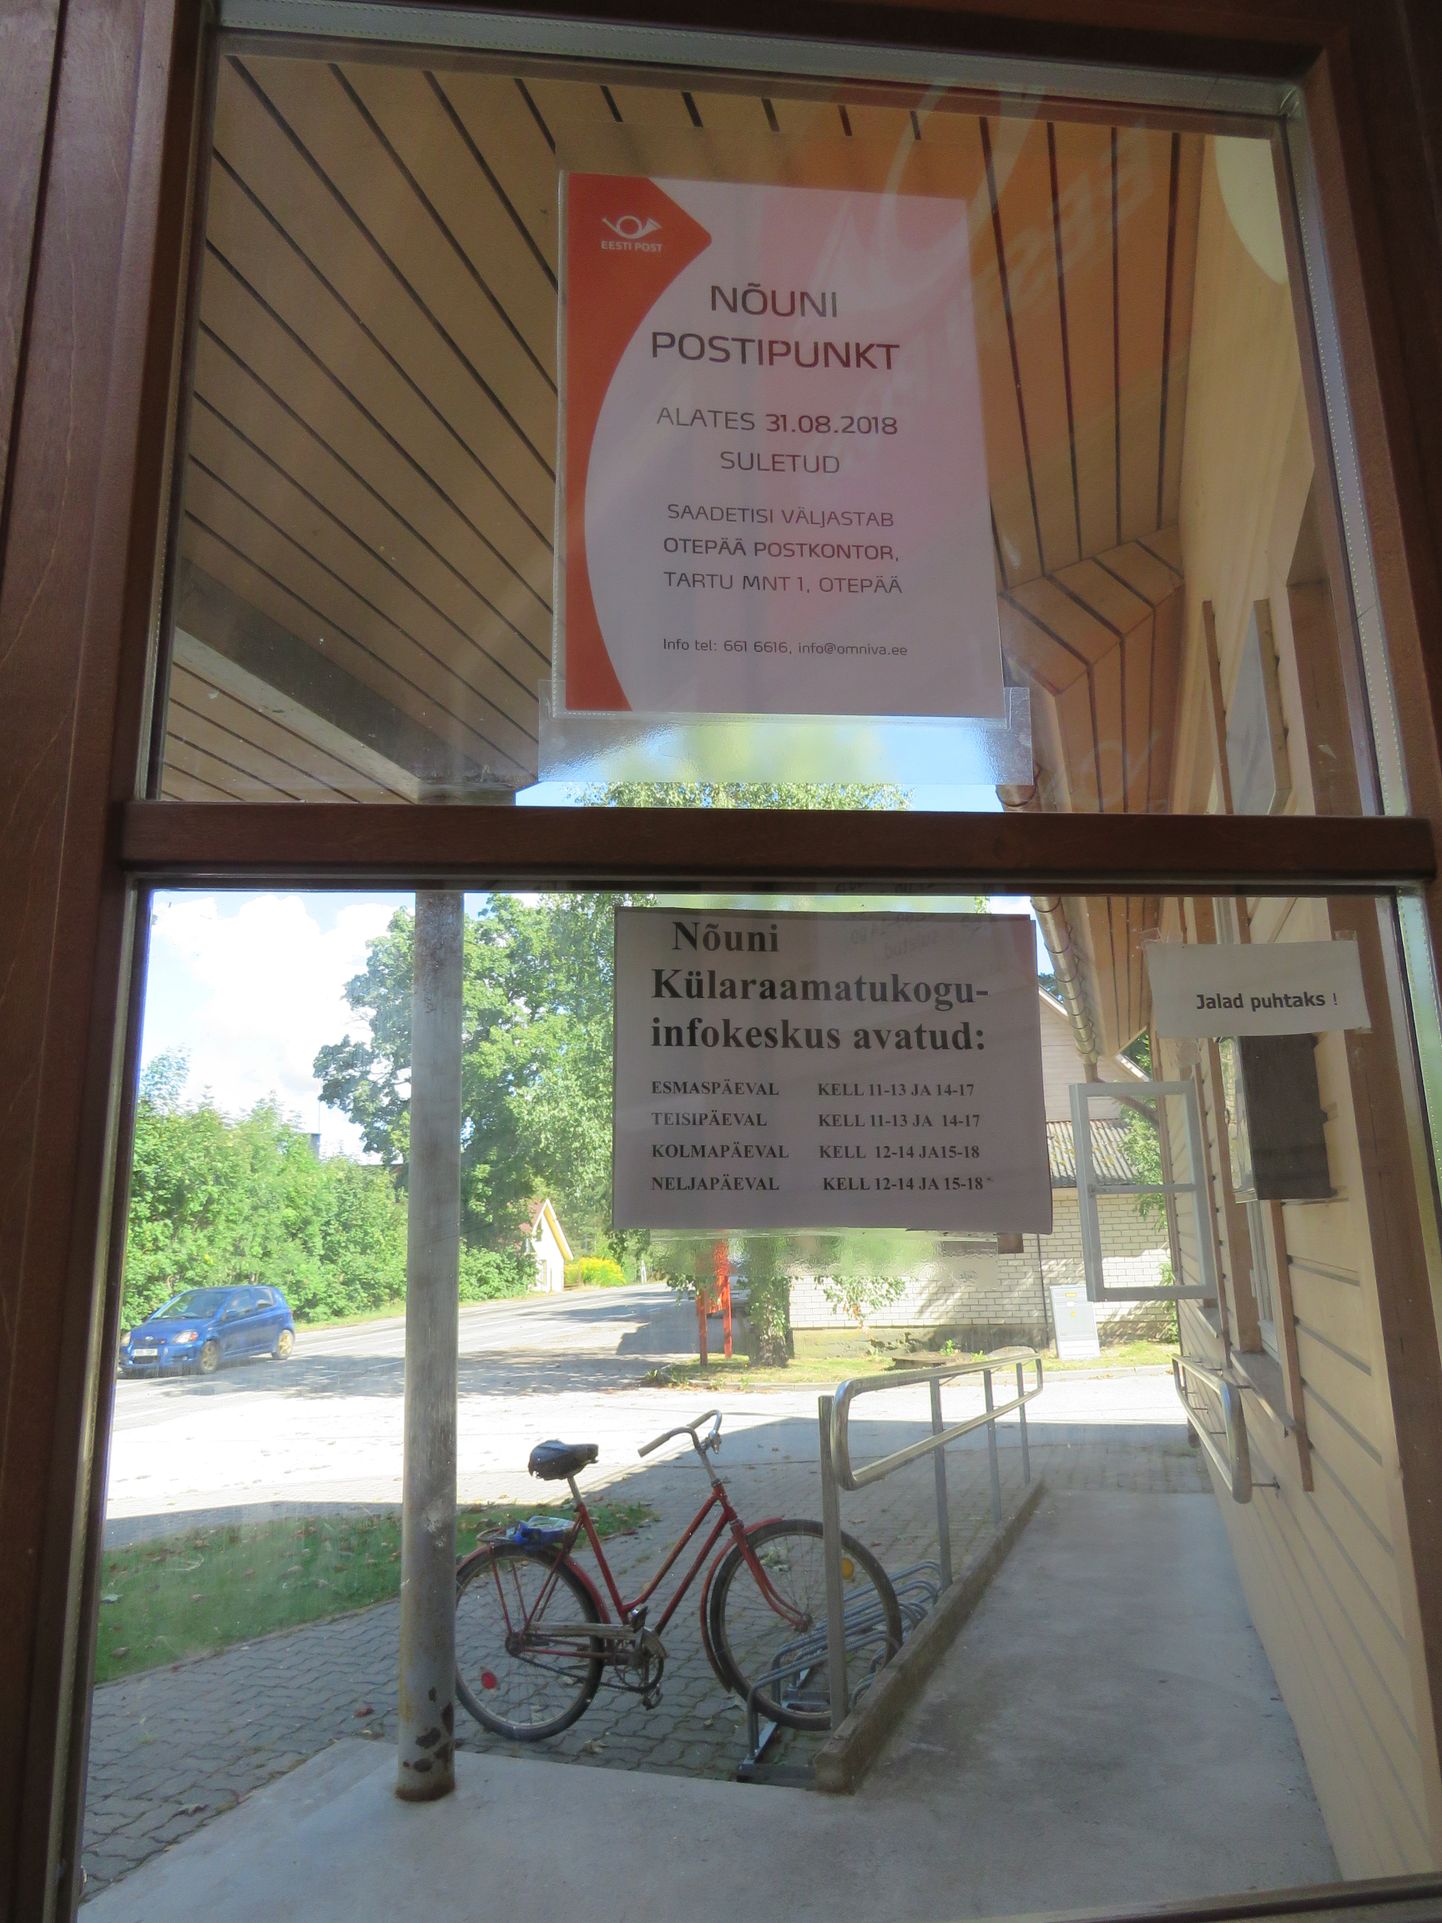 Otepää vallas asuv Nõuni postipunkt on augusti lõpust suletud. Raamatukogu jääb avatuks.